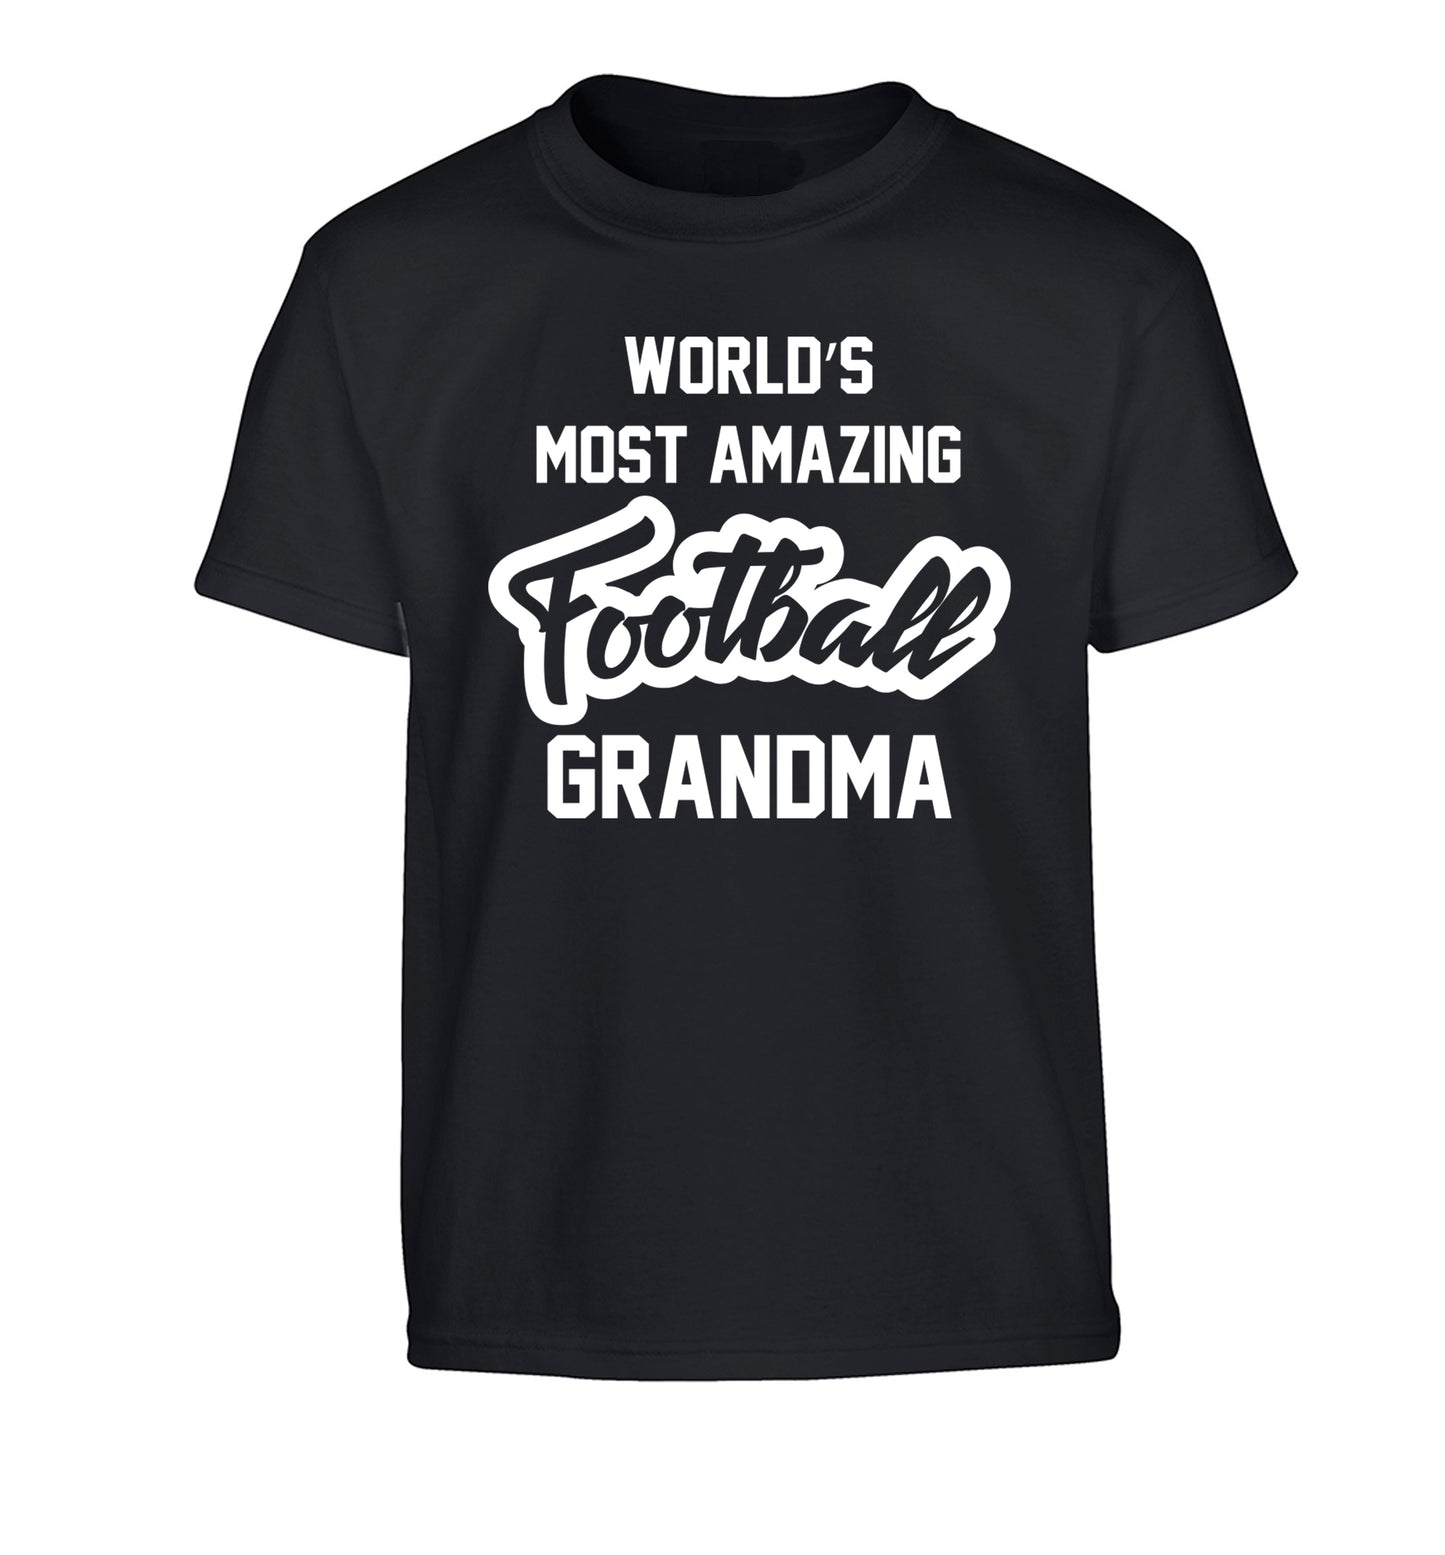 Worlds most amazing football grandma Children's black Tshirt 12-14 Years